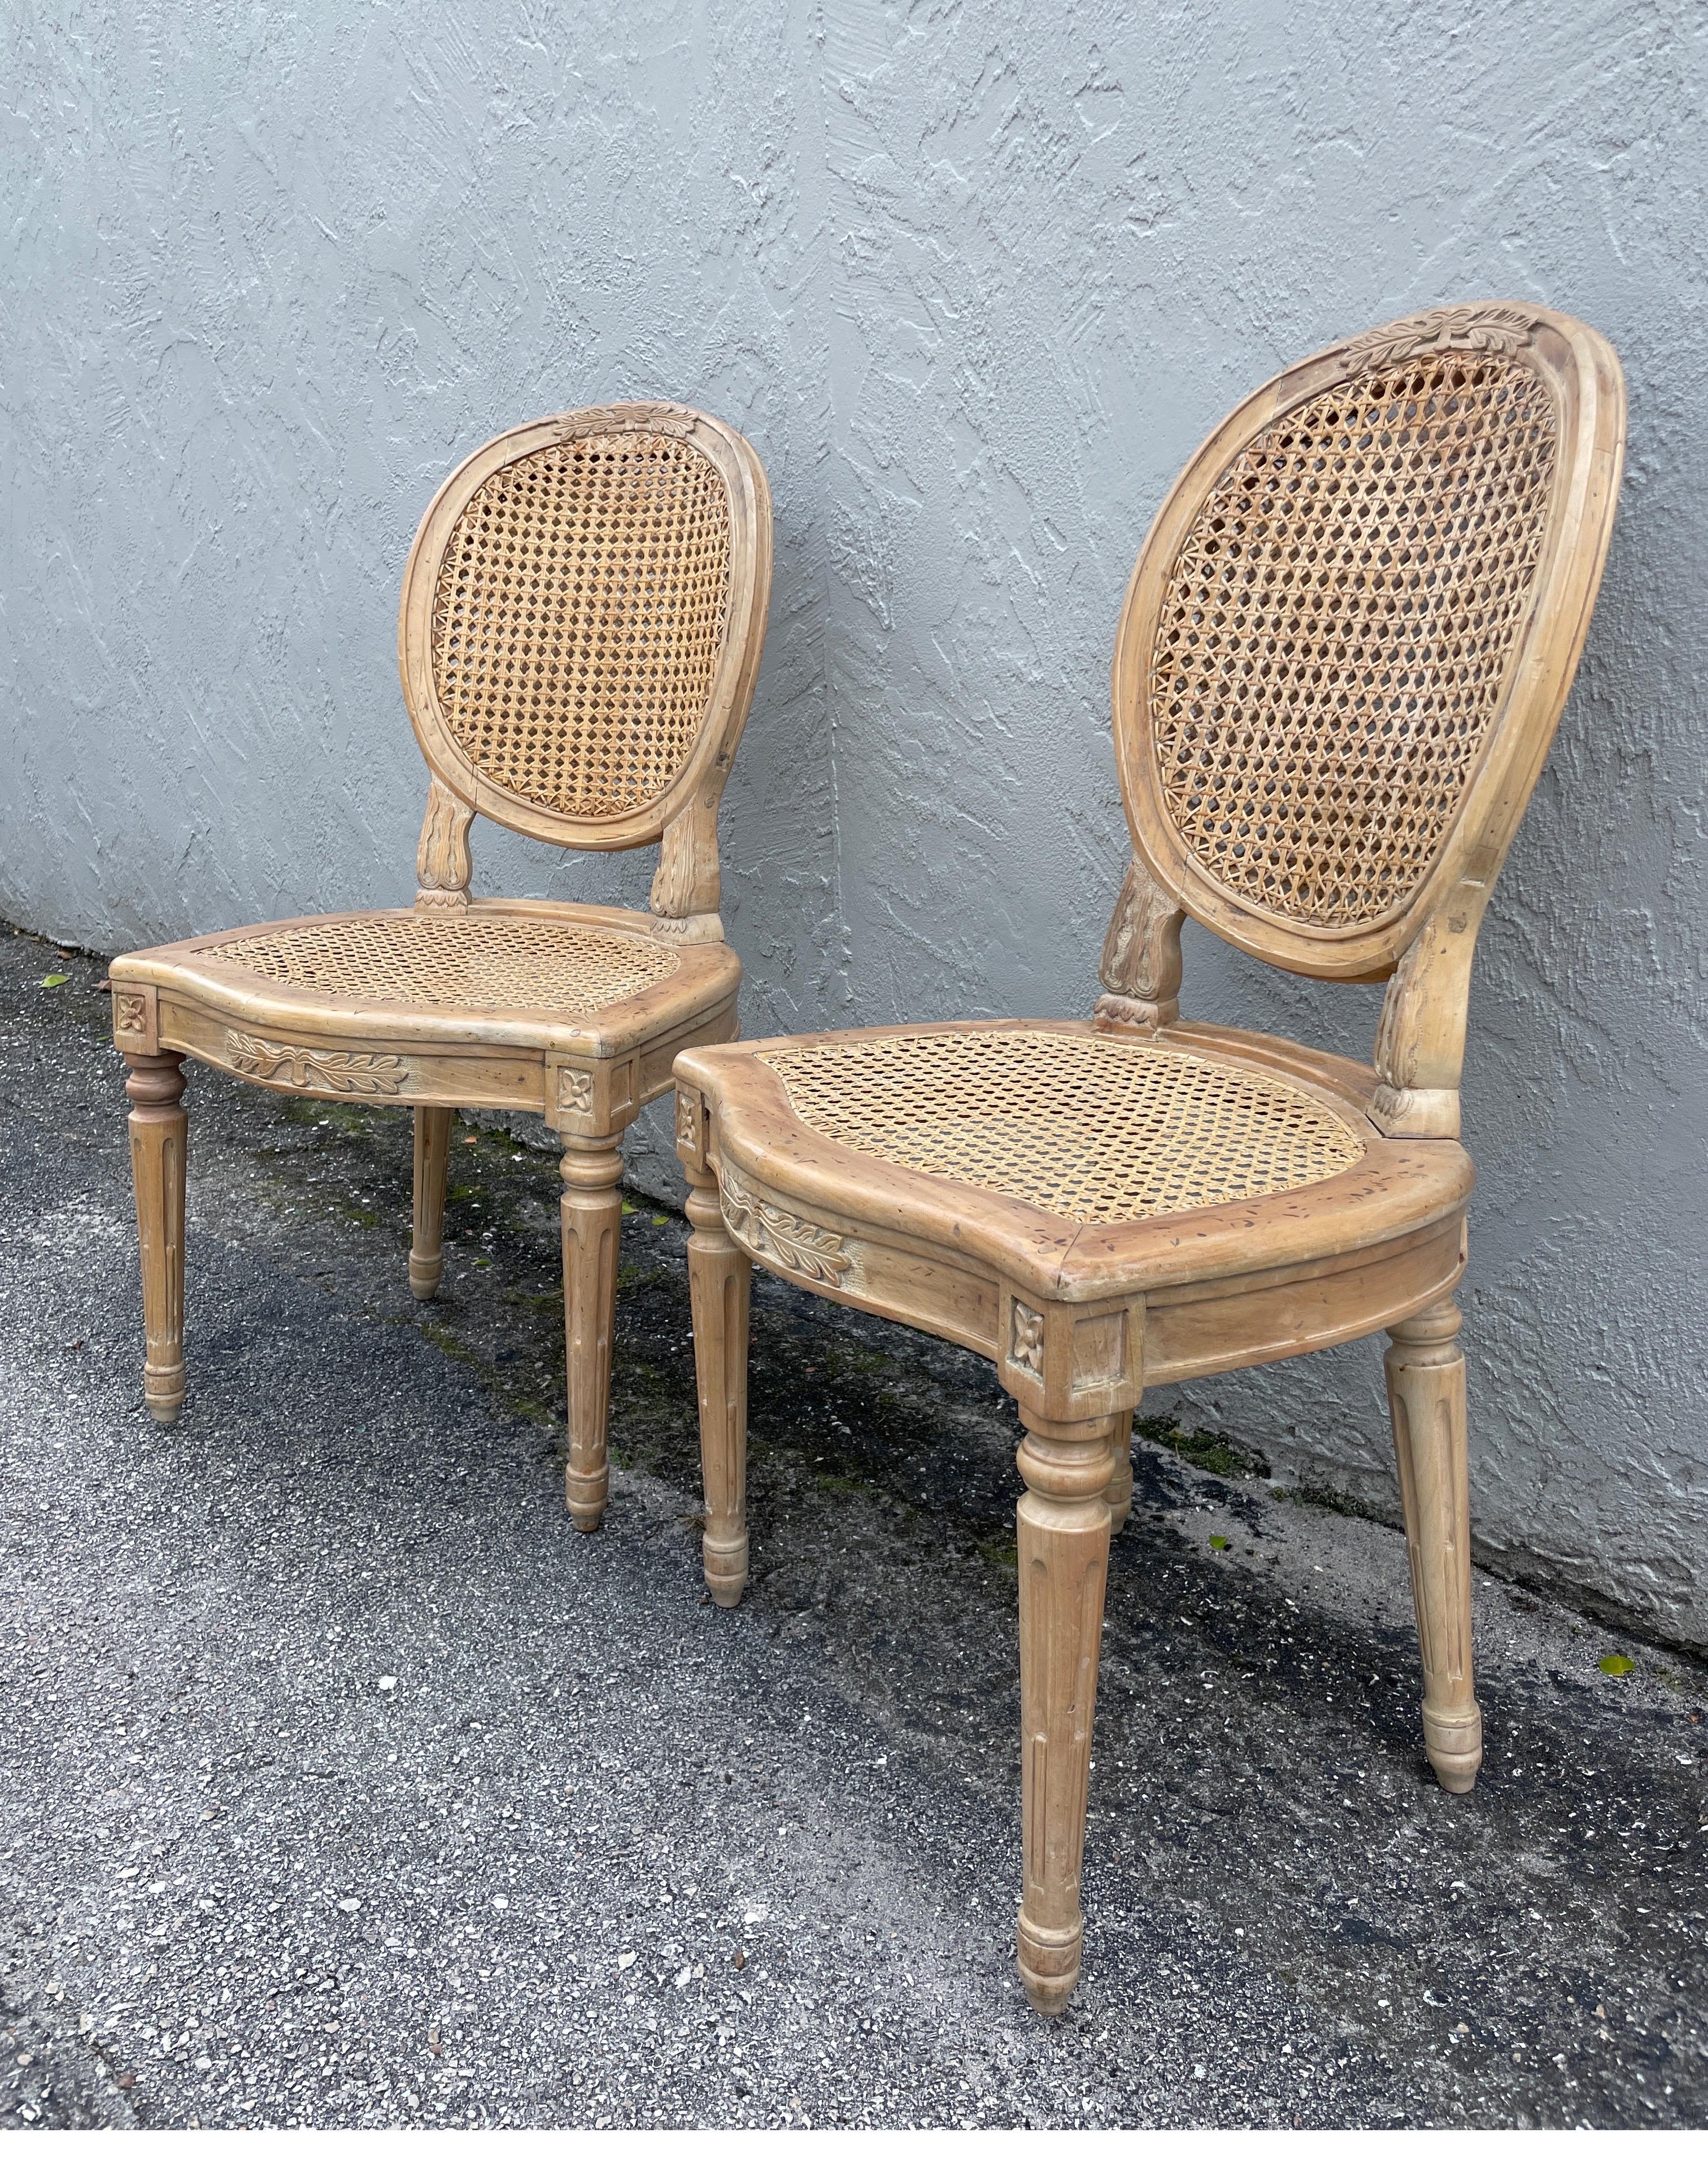 Vintage Paar Beistellstühle im Louis XVI-Stil. Die Oberfläche hat eine helle, natürliche Farbe mit einem leichten Hauch von Weiß. Die Sitzfläche ist mit Rohrstöcken versehen und die ovale Rückenlehne ist mit zwei Handstöcken versehen. Sehr gut